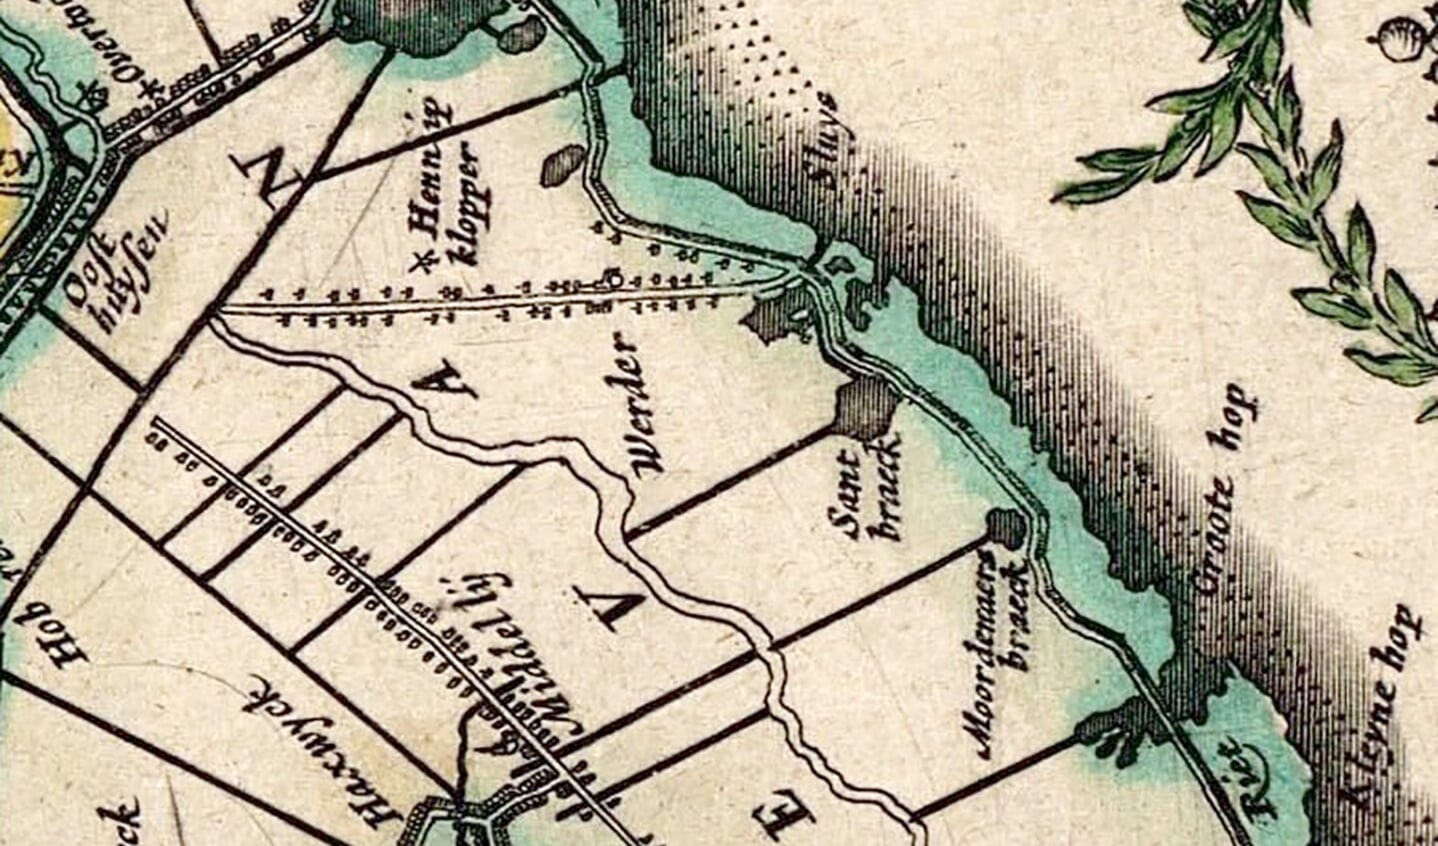 Op dit detail van de kaart van Bleau (ca. 1630) is Warder weergegeven. In het Markermeer staat het woord Sluys.